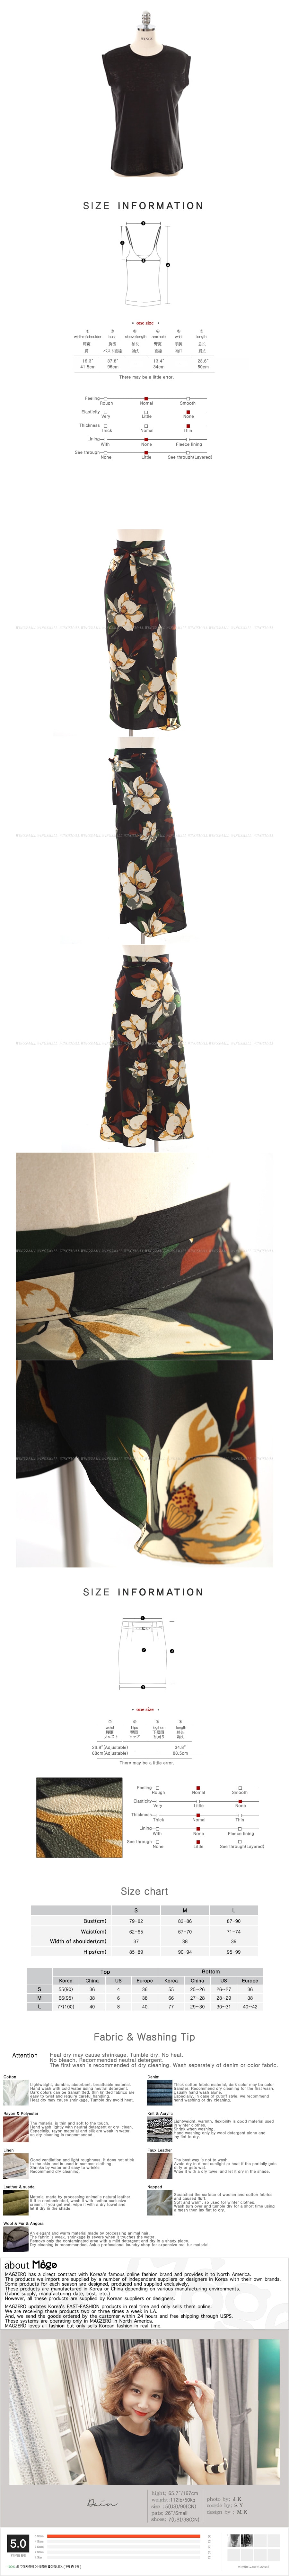 韩国正品 MAGZERO 亚米无袖上衣+碎花包裙两件套 One Size(S-M) [免费配送]